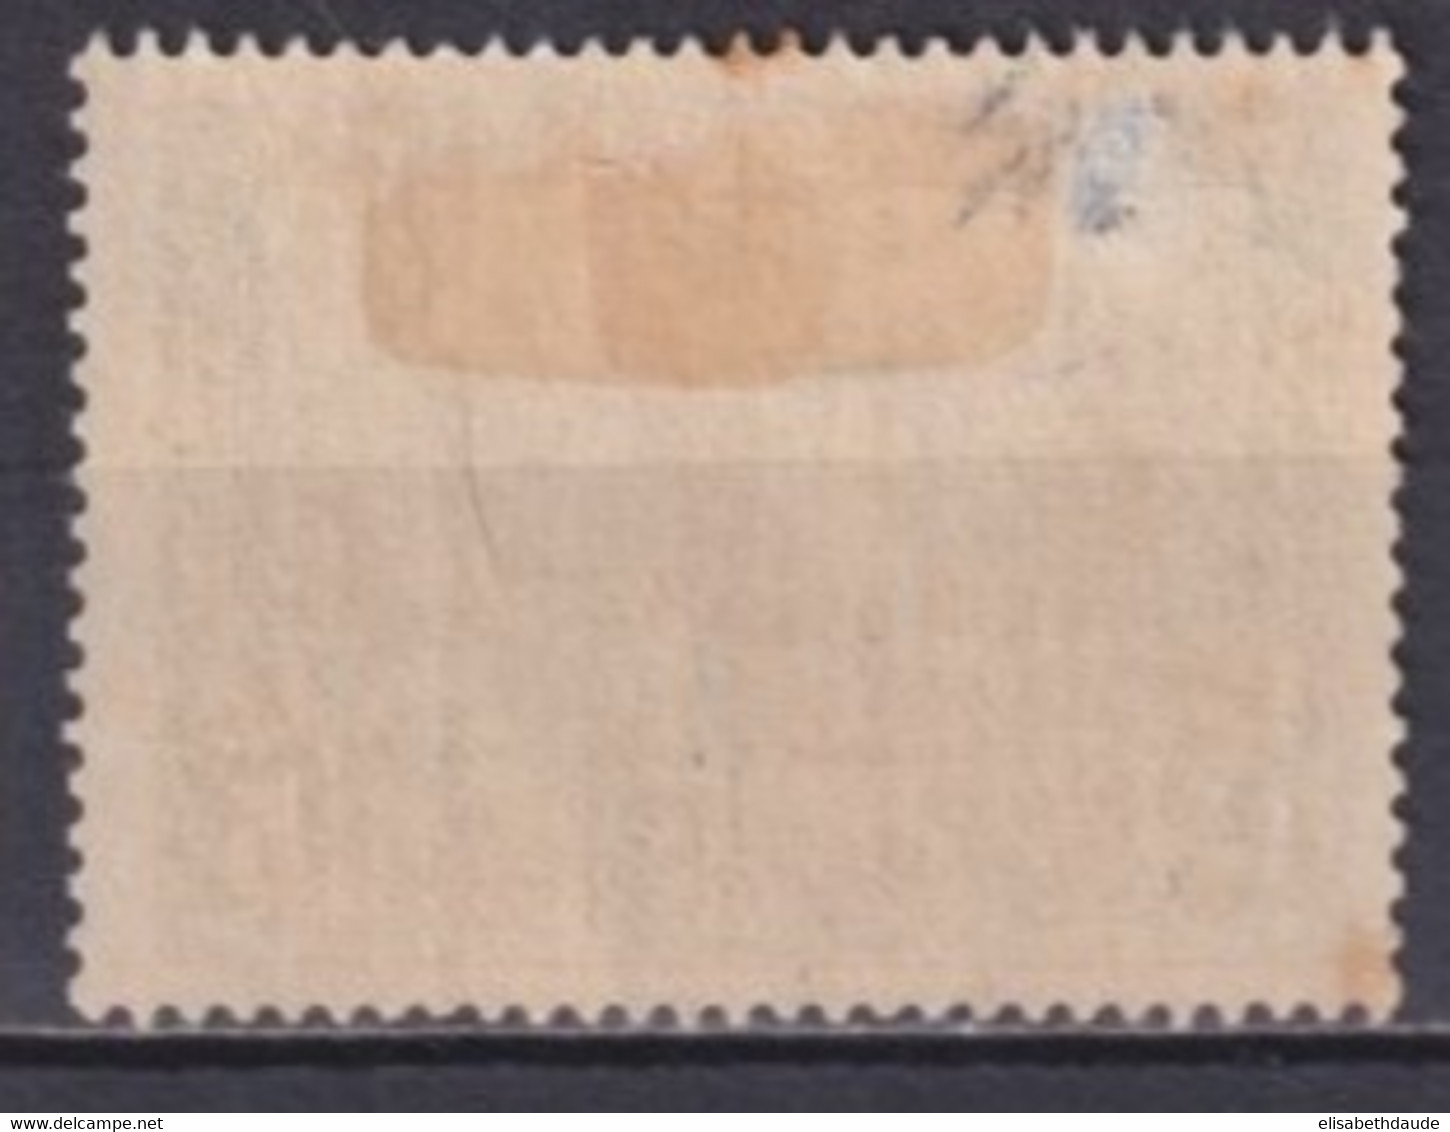 BELGIQUE - 1930 - YVERT N°314 * MH (PETITE ADHERENCE) - COTE = 45 EUR. - Unused Stamps